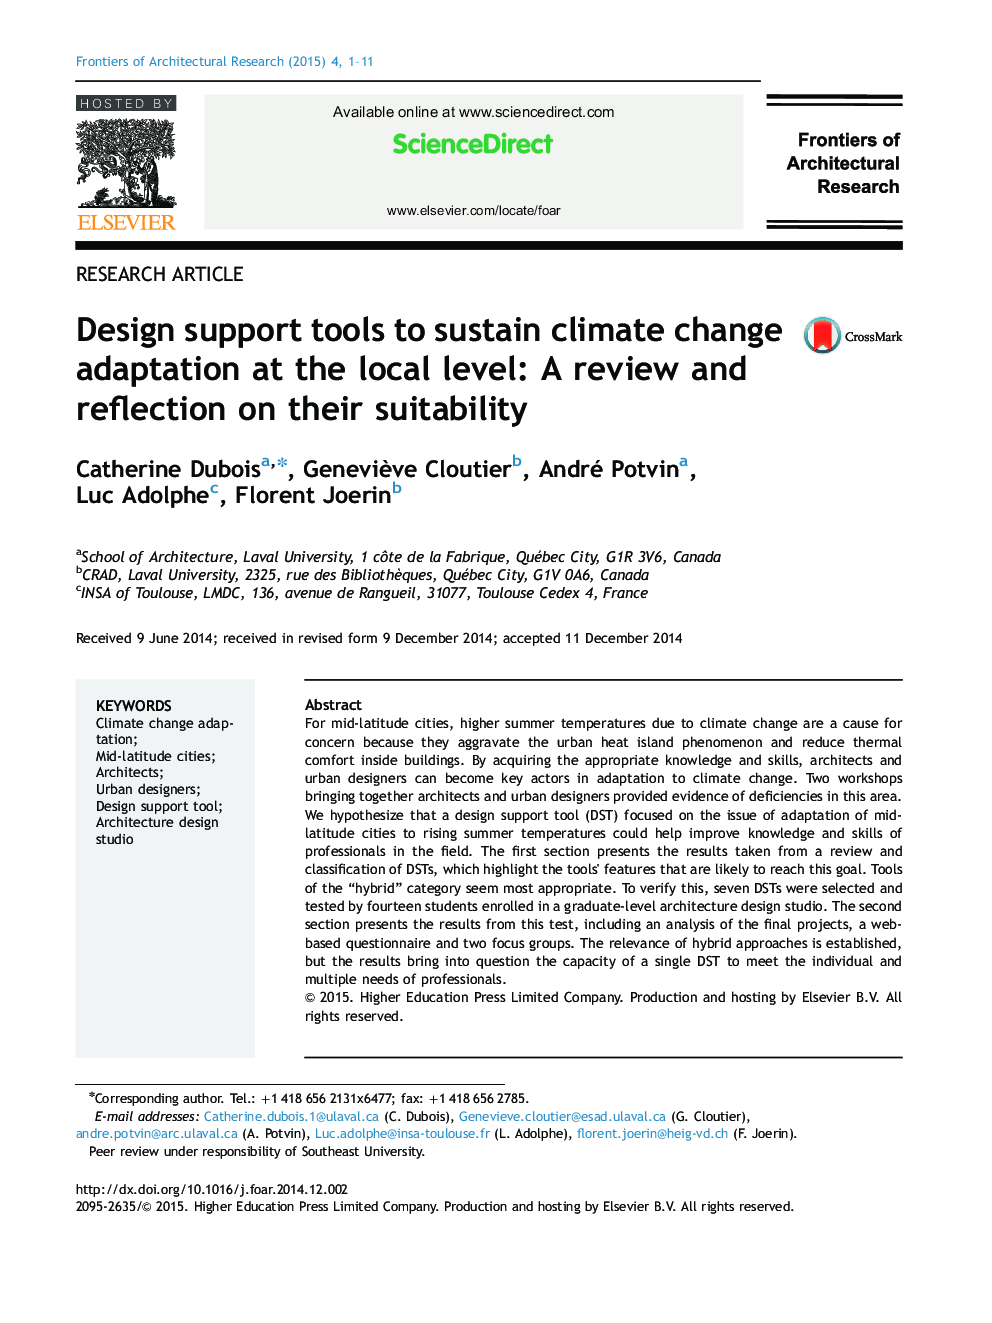 ابزارهای پشتیبانی طراحی برای تداوم سازگاری تغییرات اقلیمی در سطح محلی: بررسی و انعکاس مناسب بودن آنها 